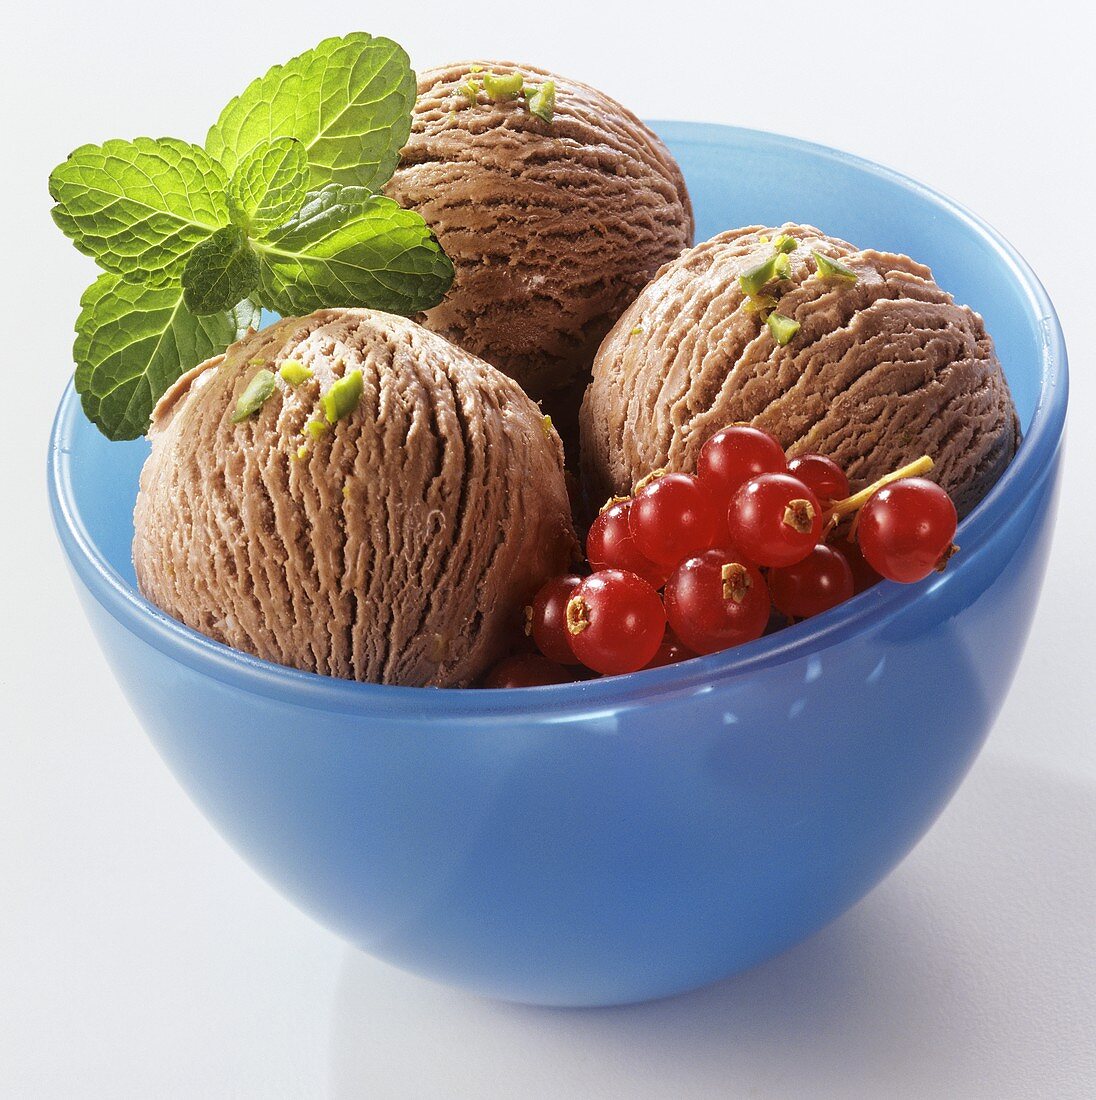 Schokoladen-Pfefferminz-Eis, garniert mit Johannisbeeren